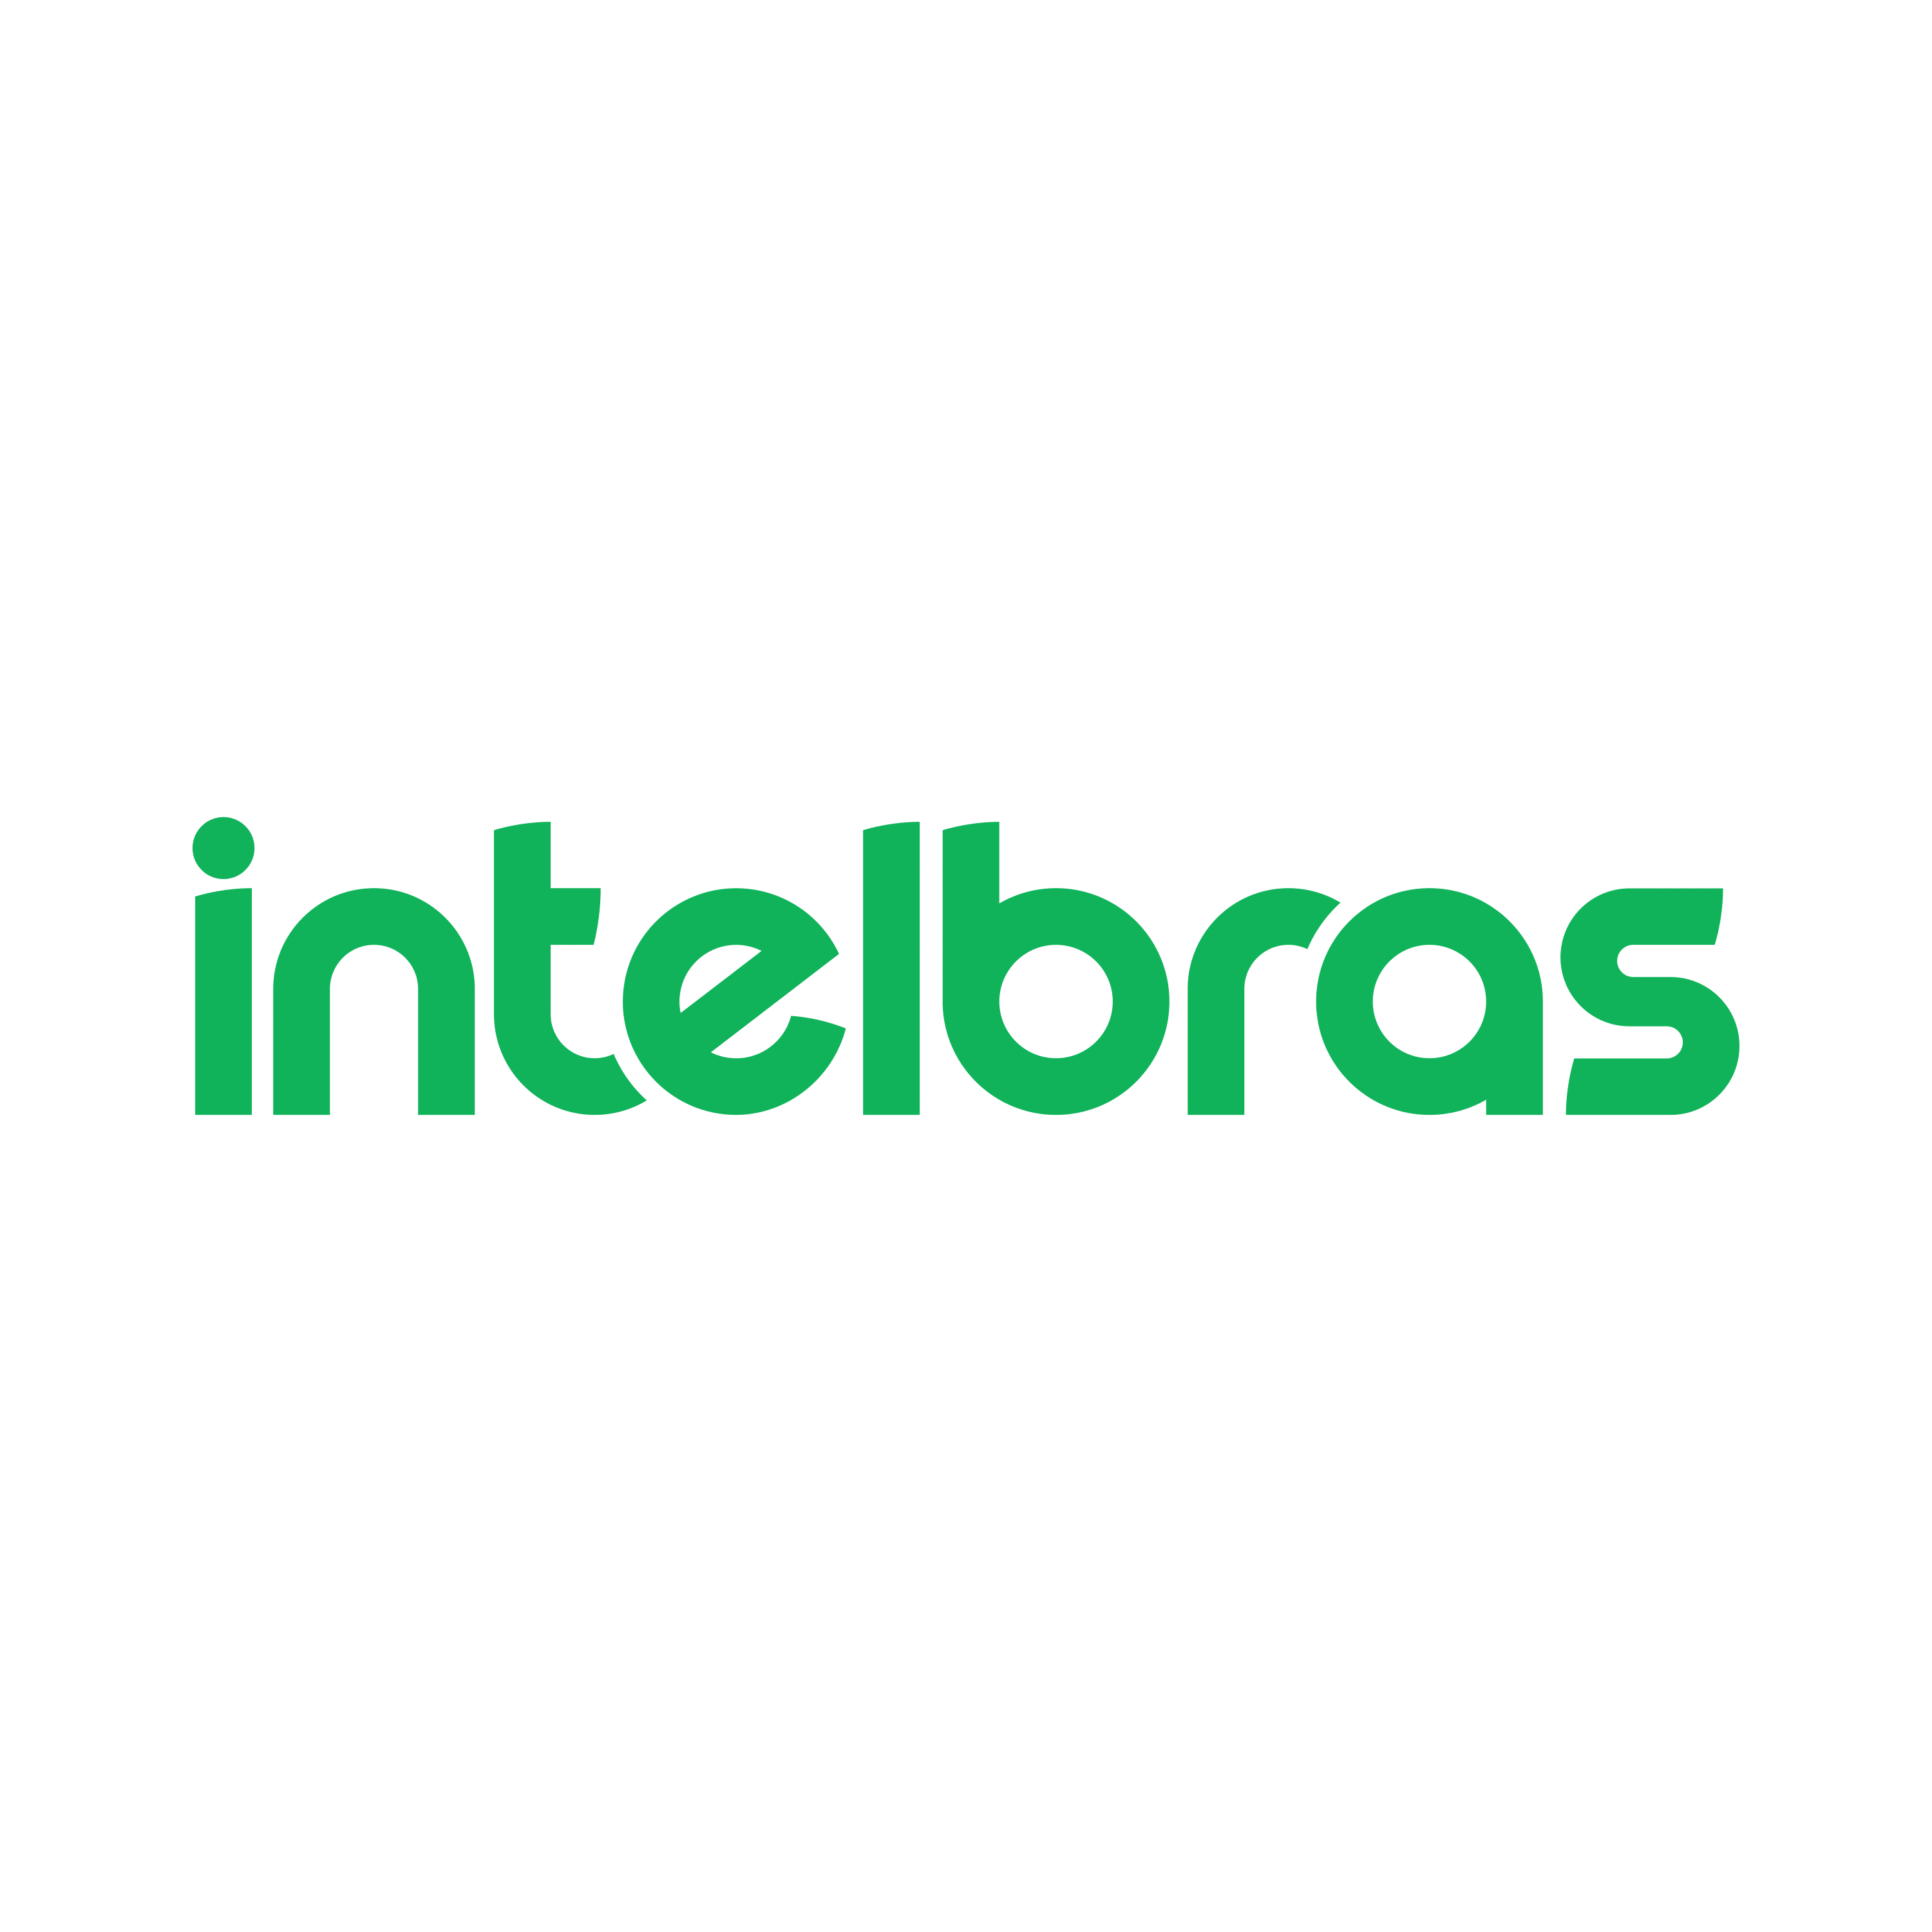 Intelbras - LOGO-1